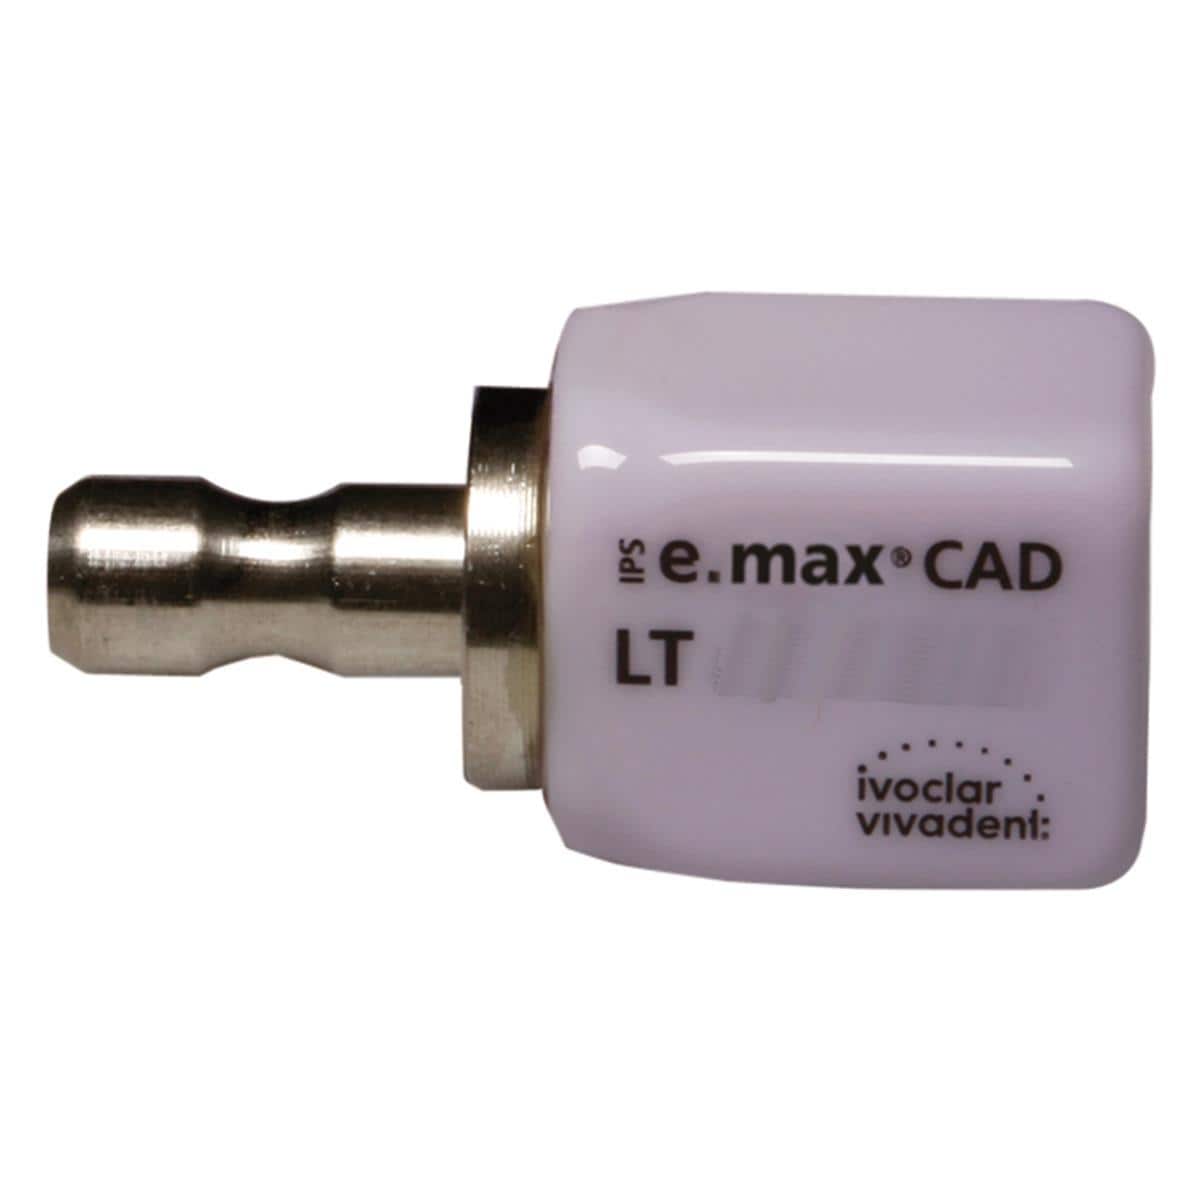 IPS e.max CAD CEREC/inLab (LT) Low Translucency Block A3 Size C14 5pk ...